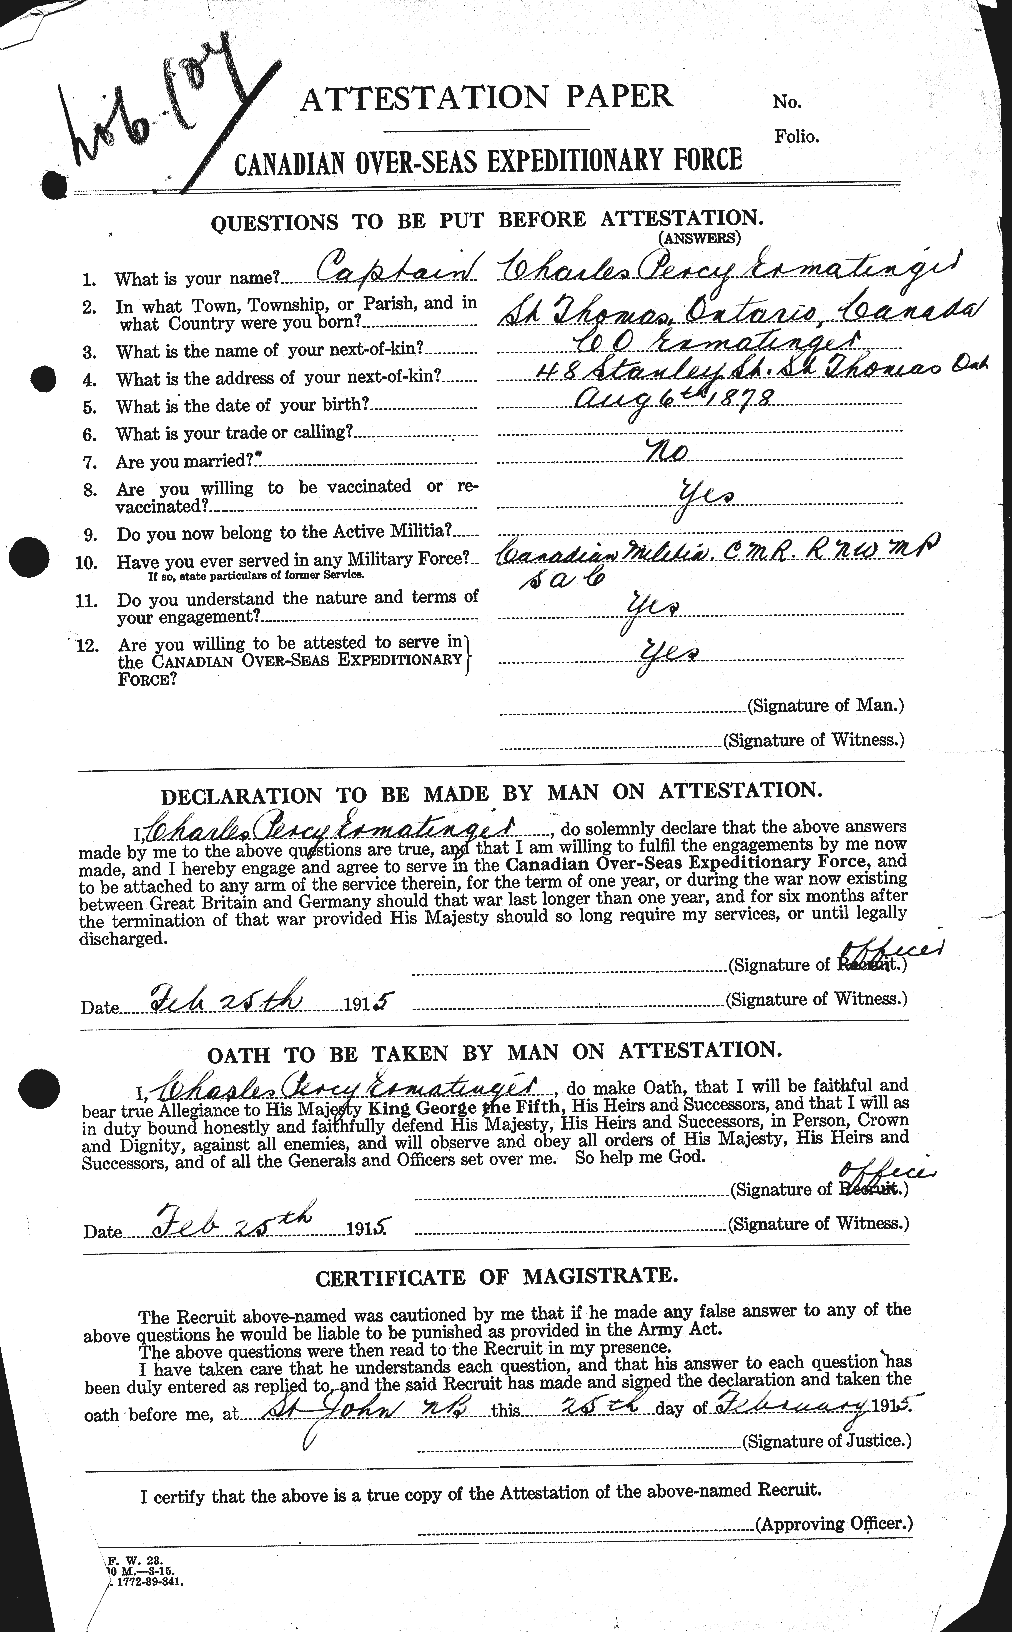 Dossiers du Personnel de la Première Guerre mondiale - CEC 313487a